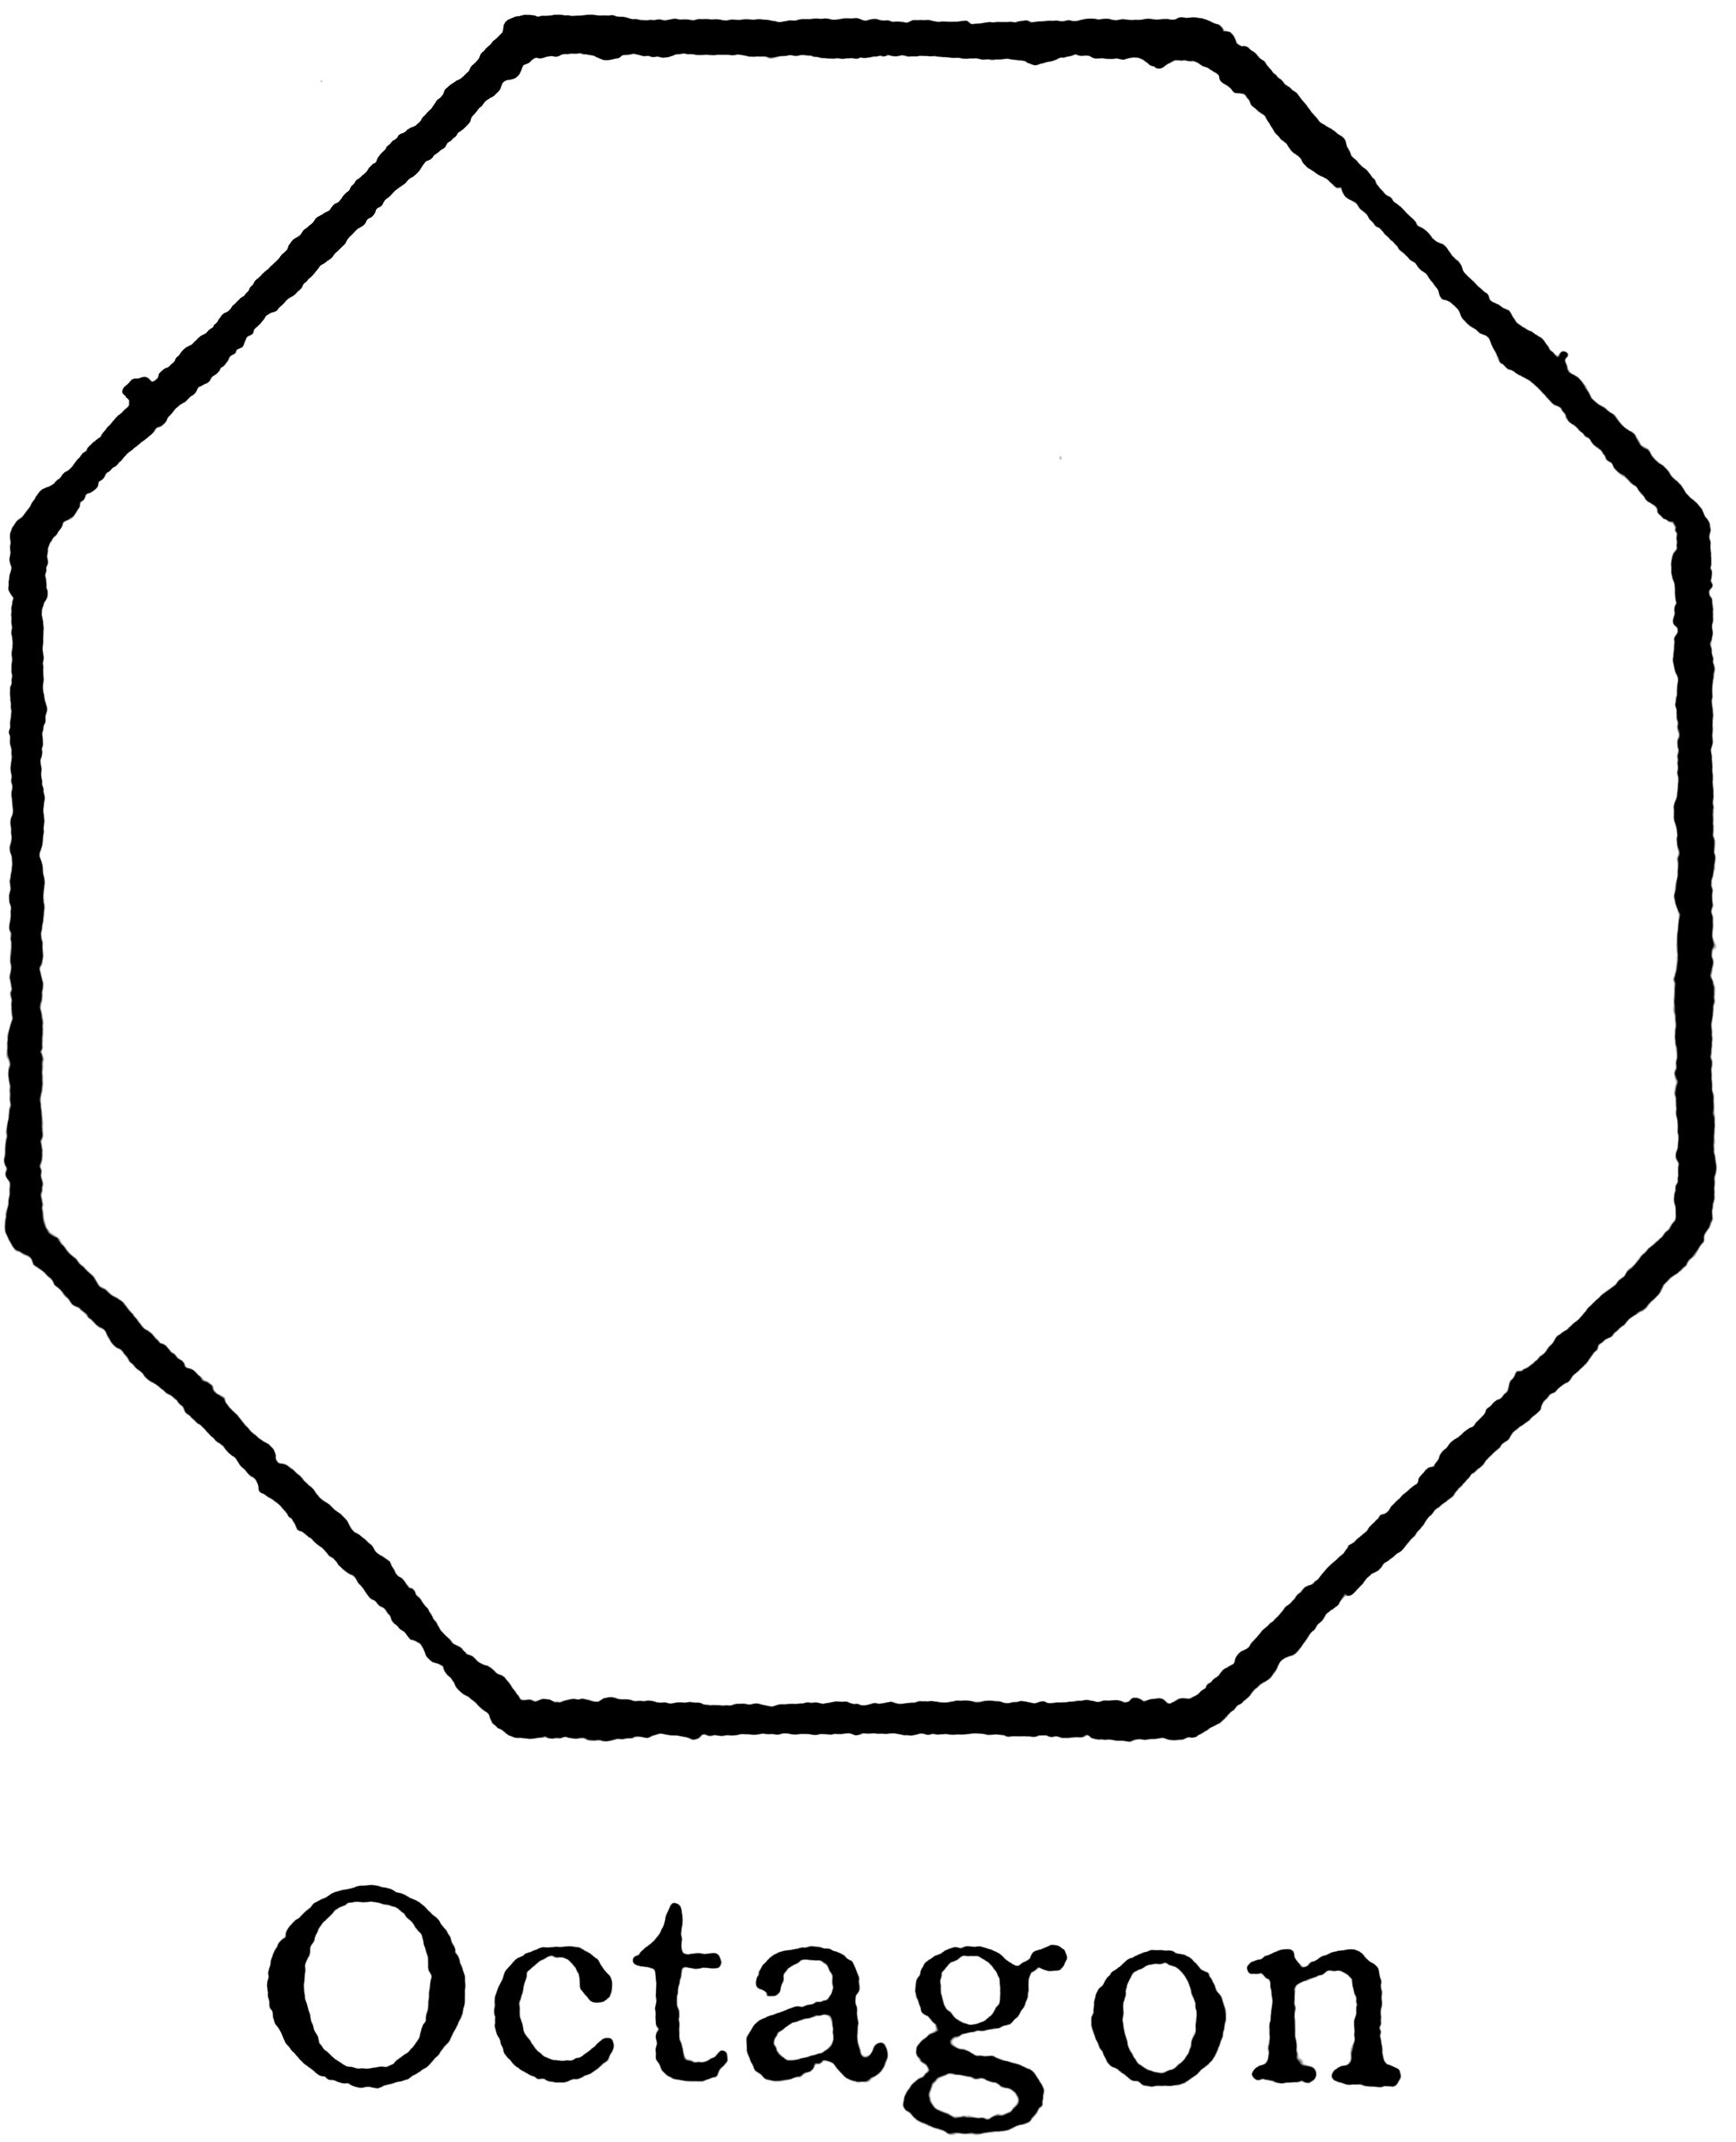 octagon-clipart-etc